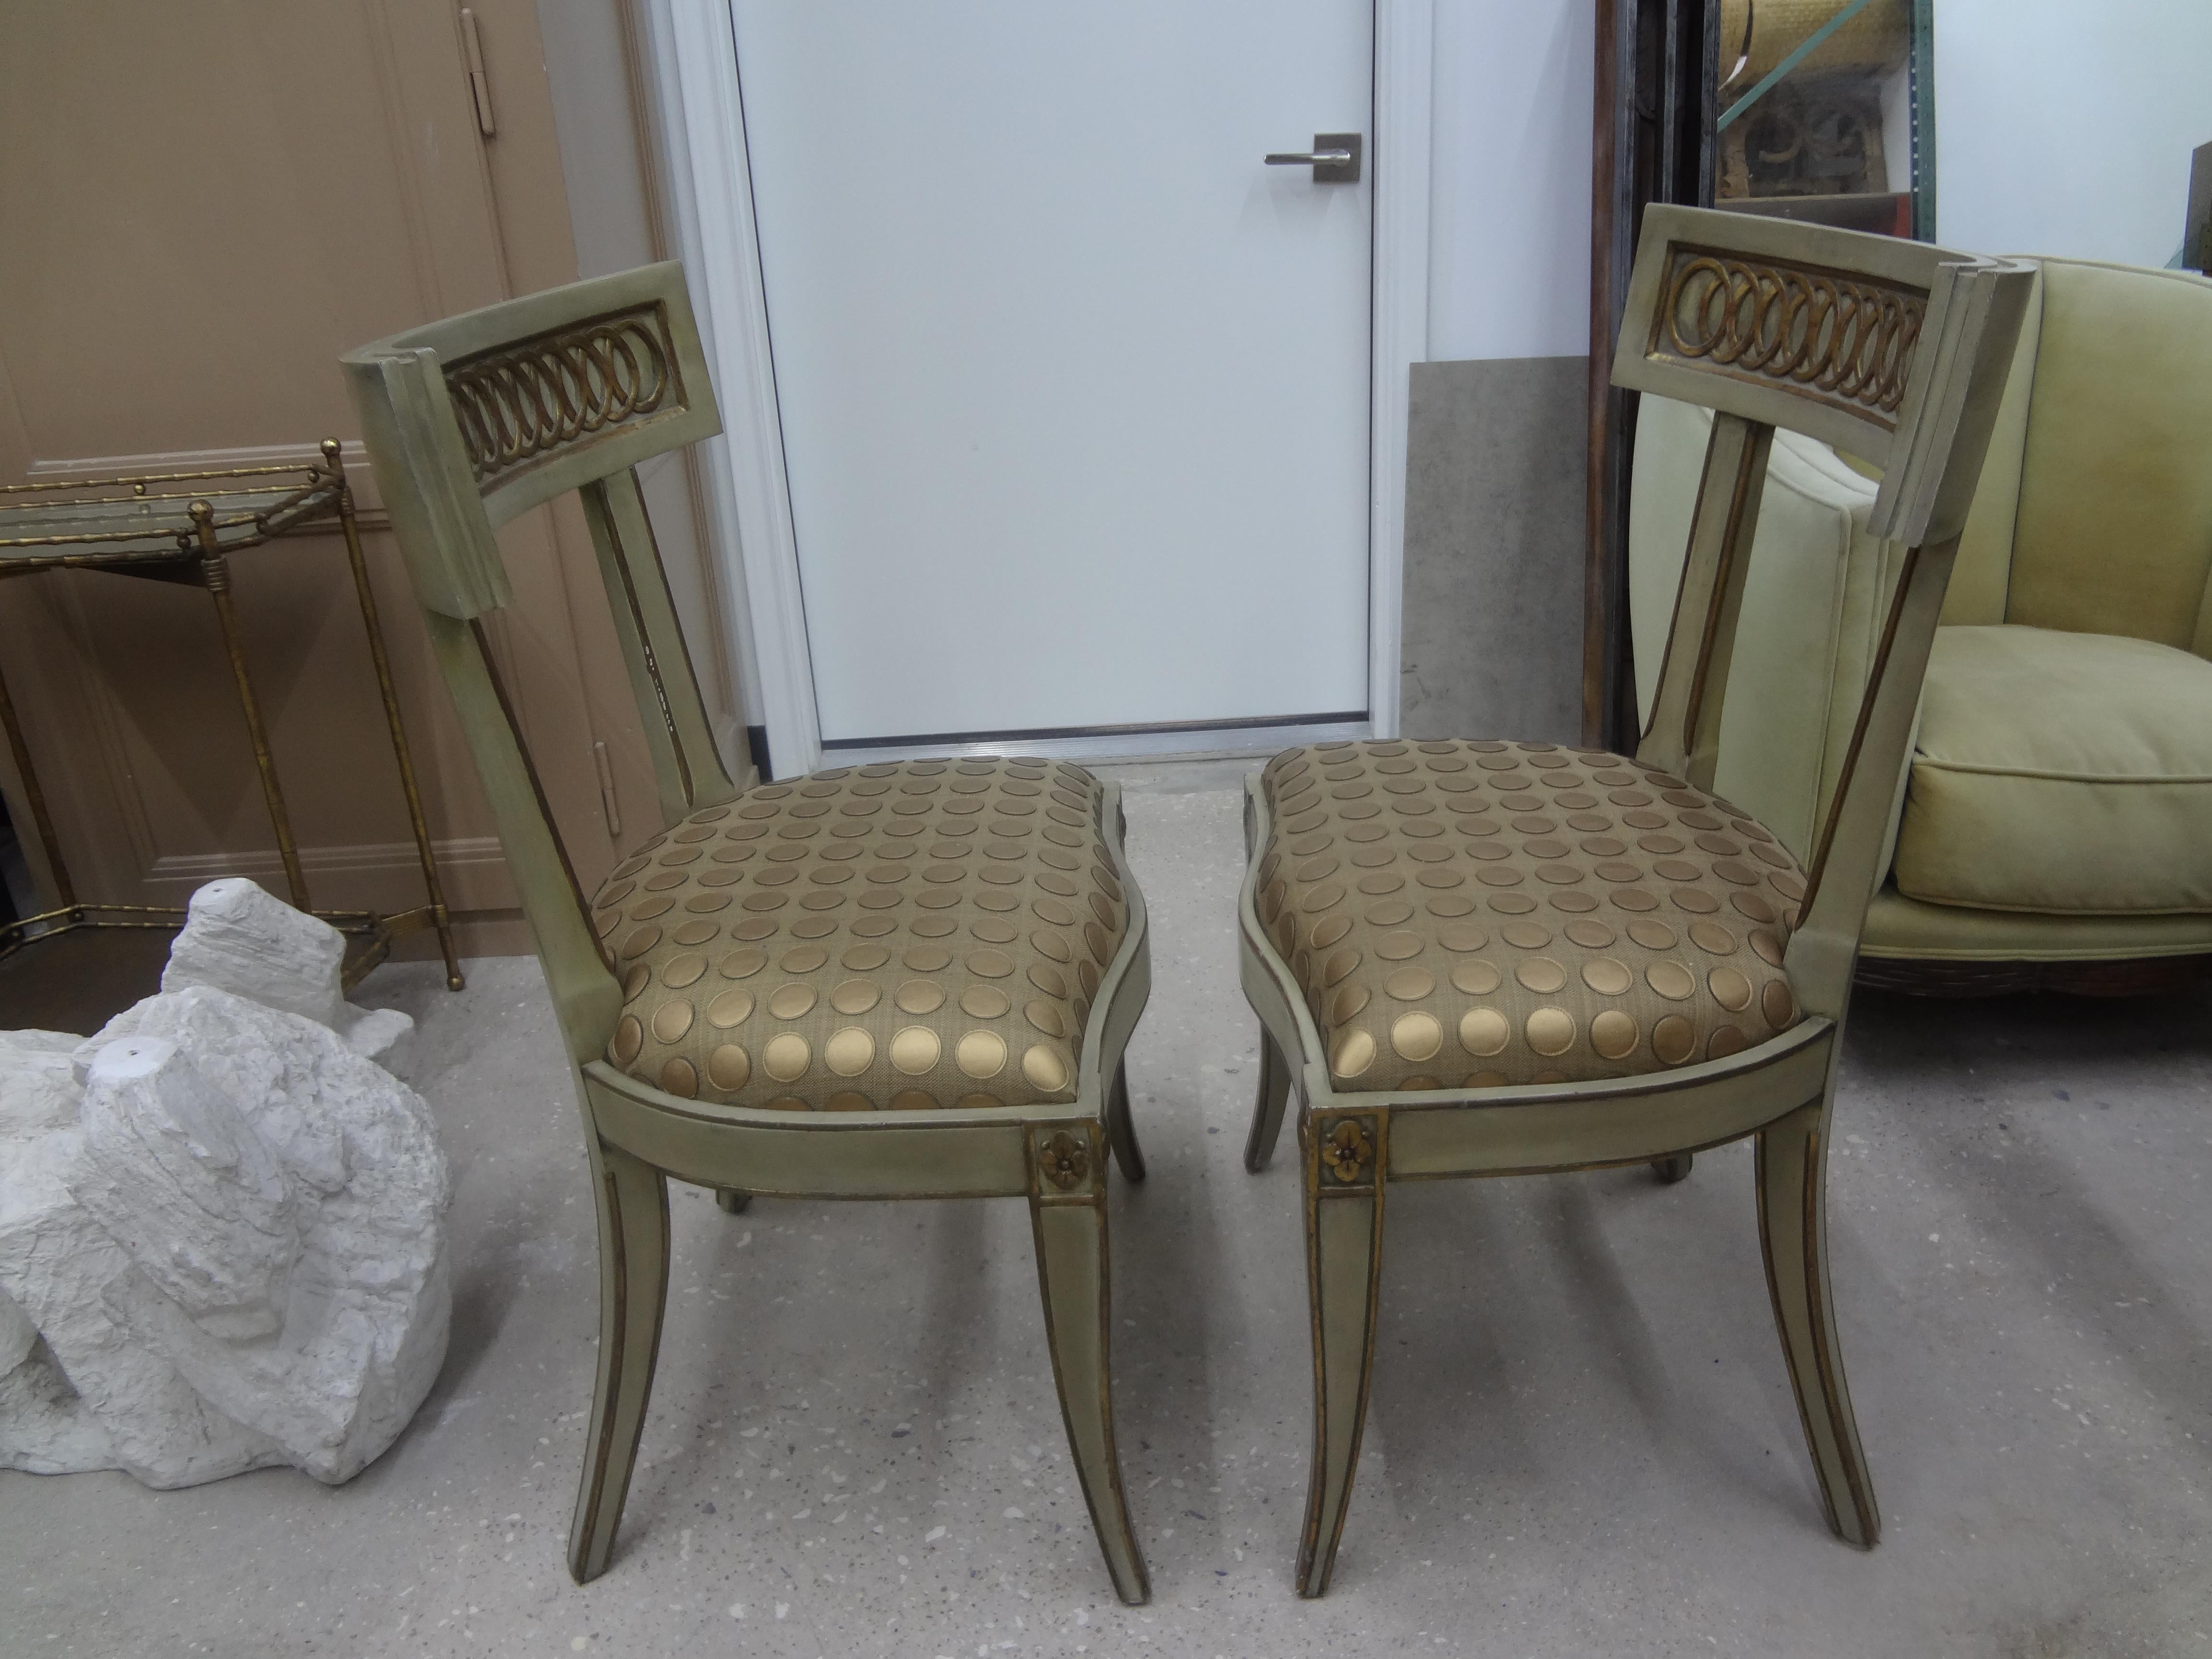 Superbe paire de chaises italiennes de style klismos Hollywood Regency. Ces chaises d'appoint italiennes de style chic sont peintes en gris/vert doux avec des accents dorés et ont de superbes pieds évasés ou des pieds sabres. Nos chaises Klismos